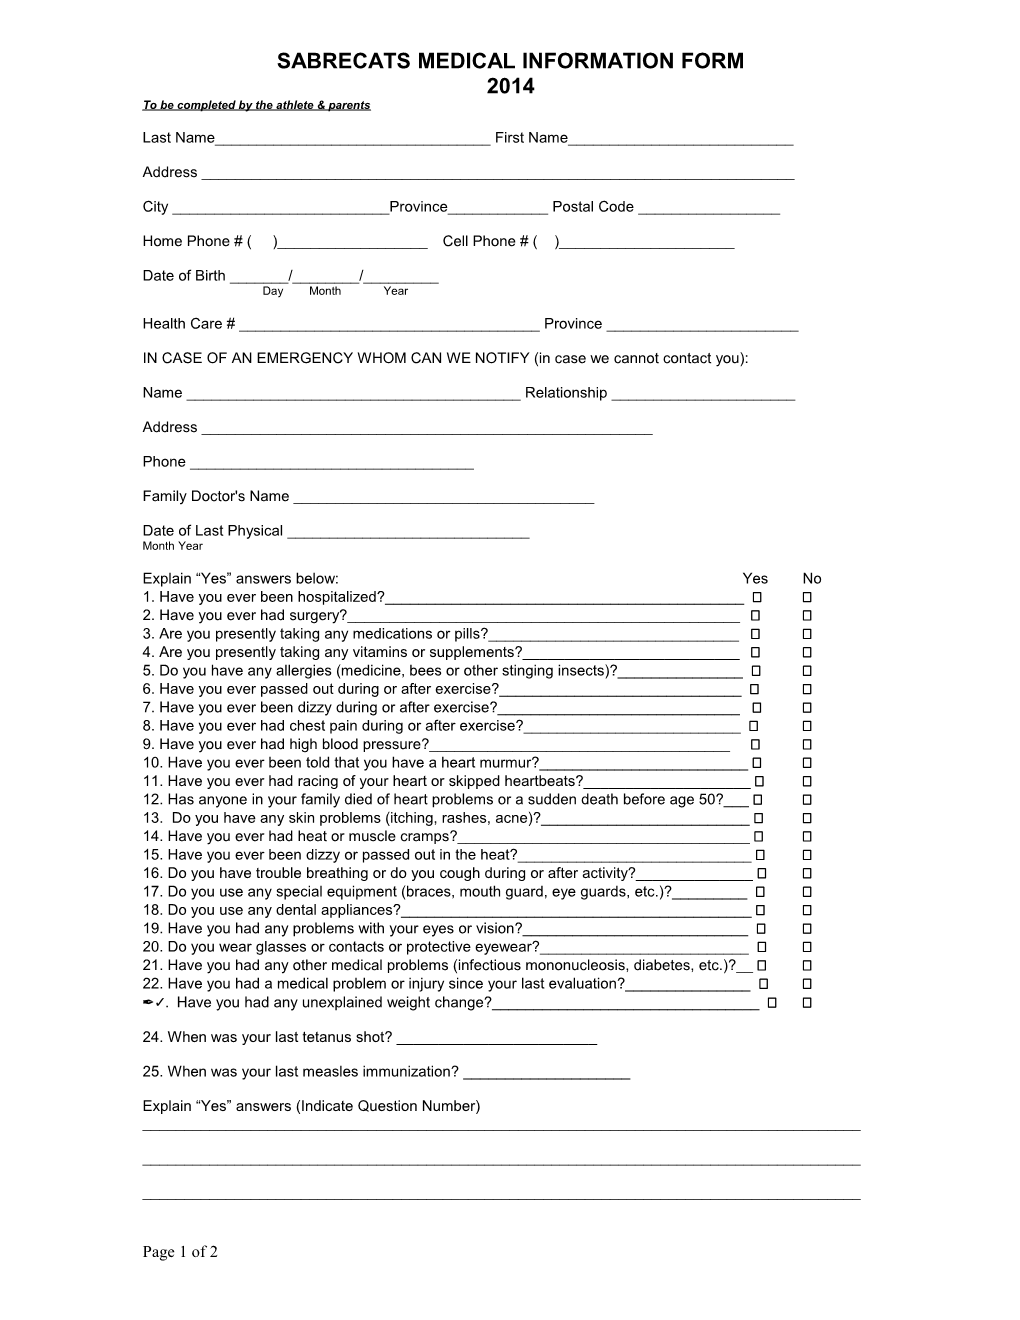 Sherwood Park Crusaders Medical Information Form